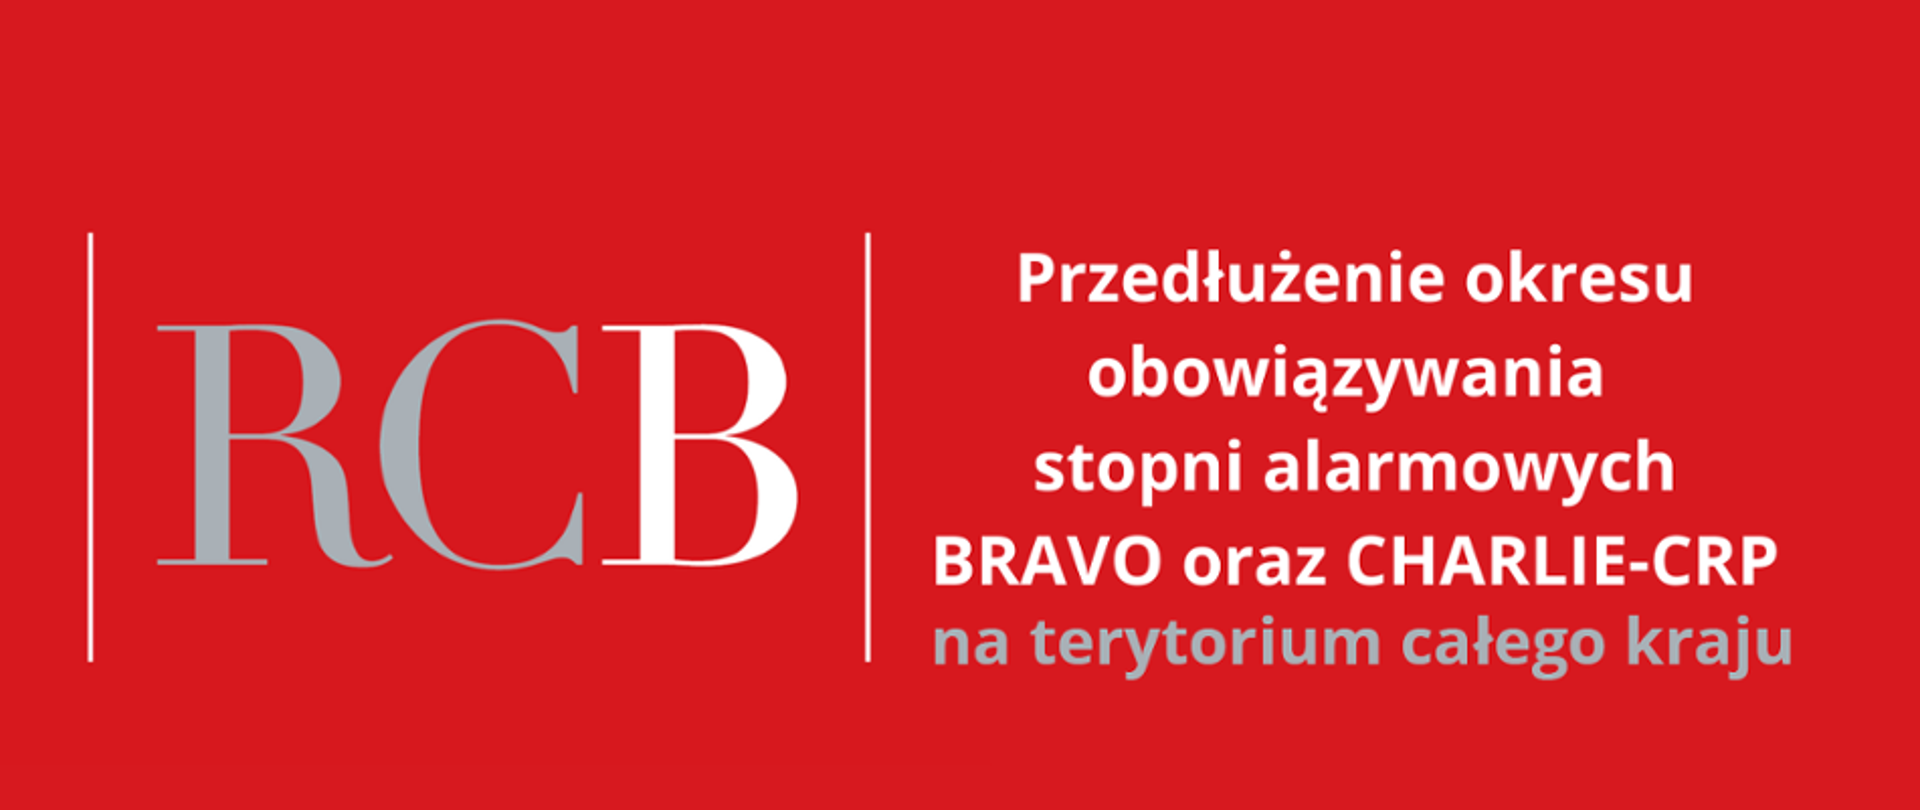 Grafika. Na czerwonym tle napis: RCB Przedłużenie okresu obowiązywania stopni alarmowych BRAVO i CHARLIE-CRP na terytorium całego kraju